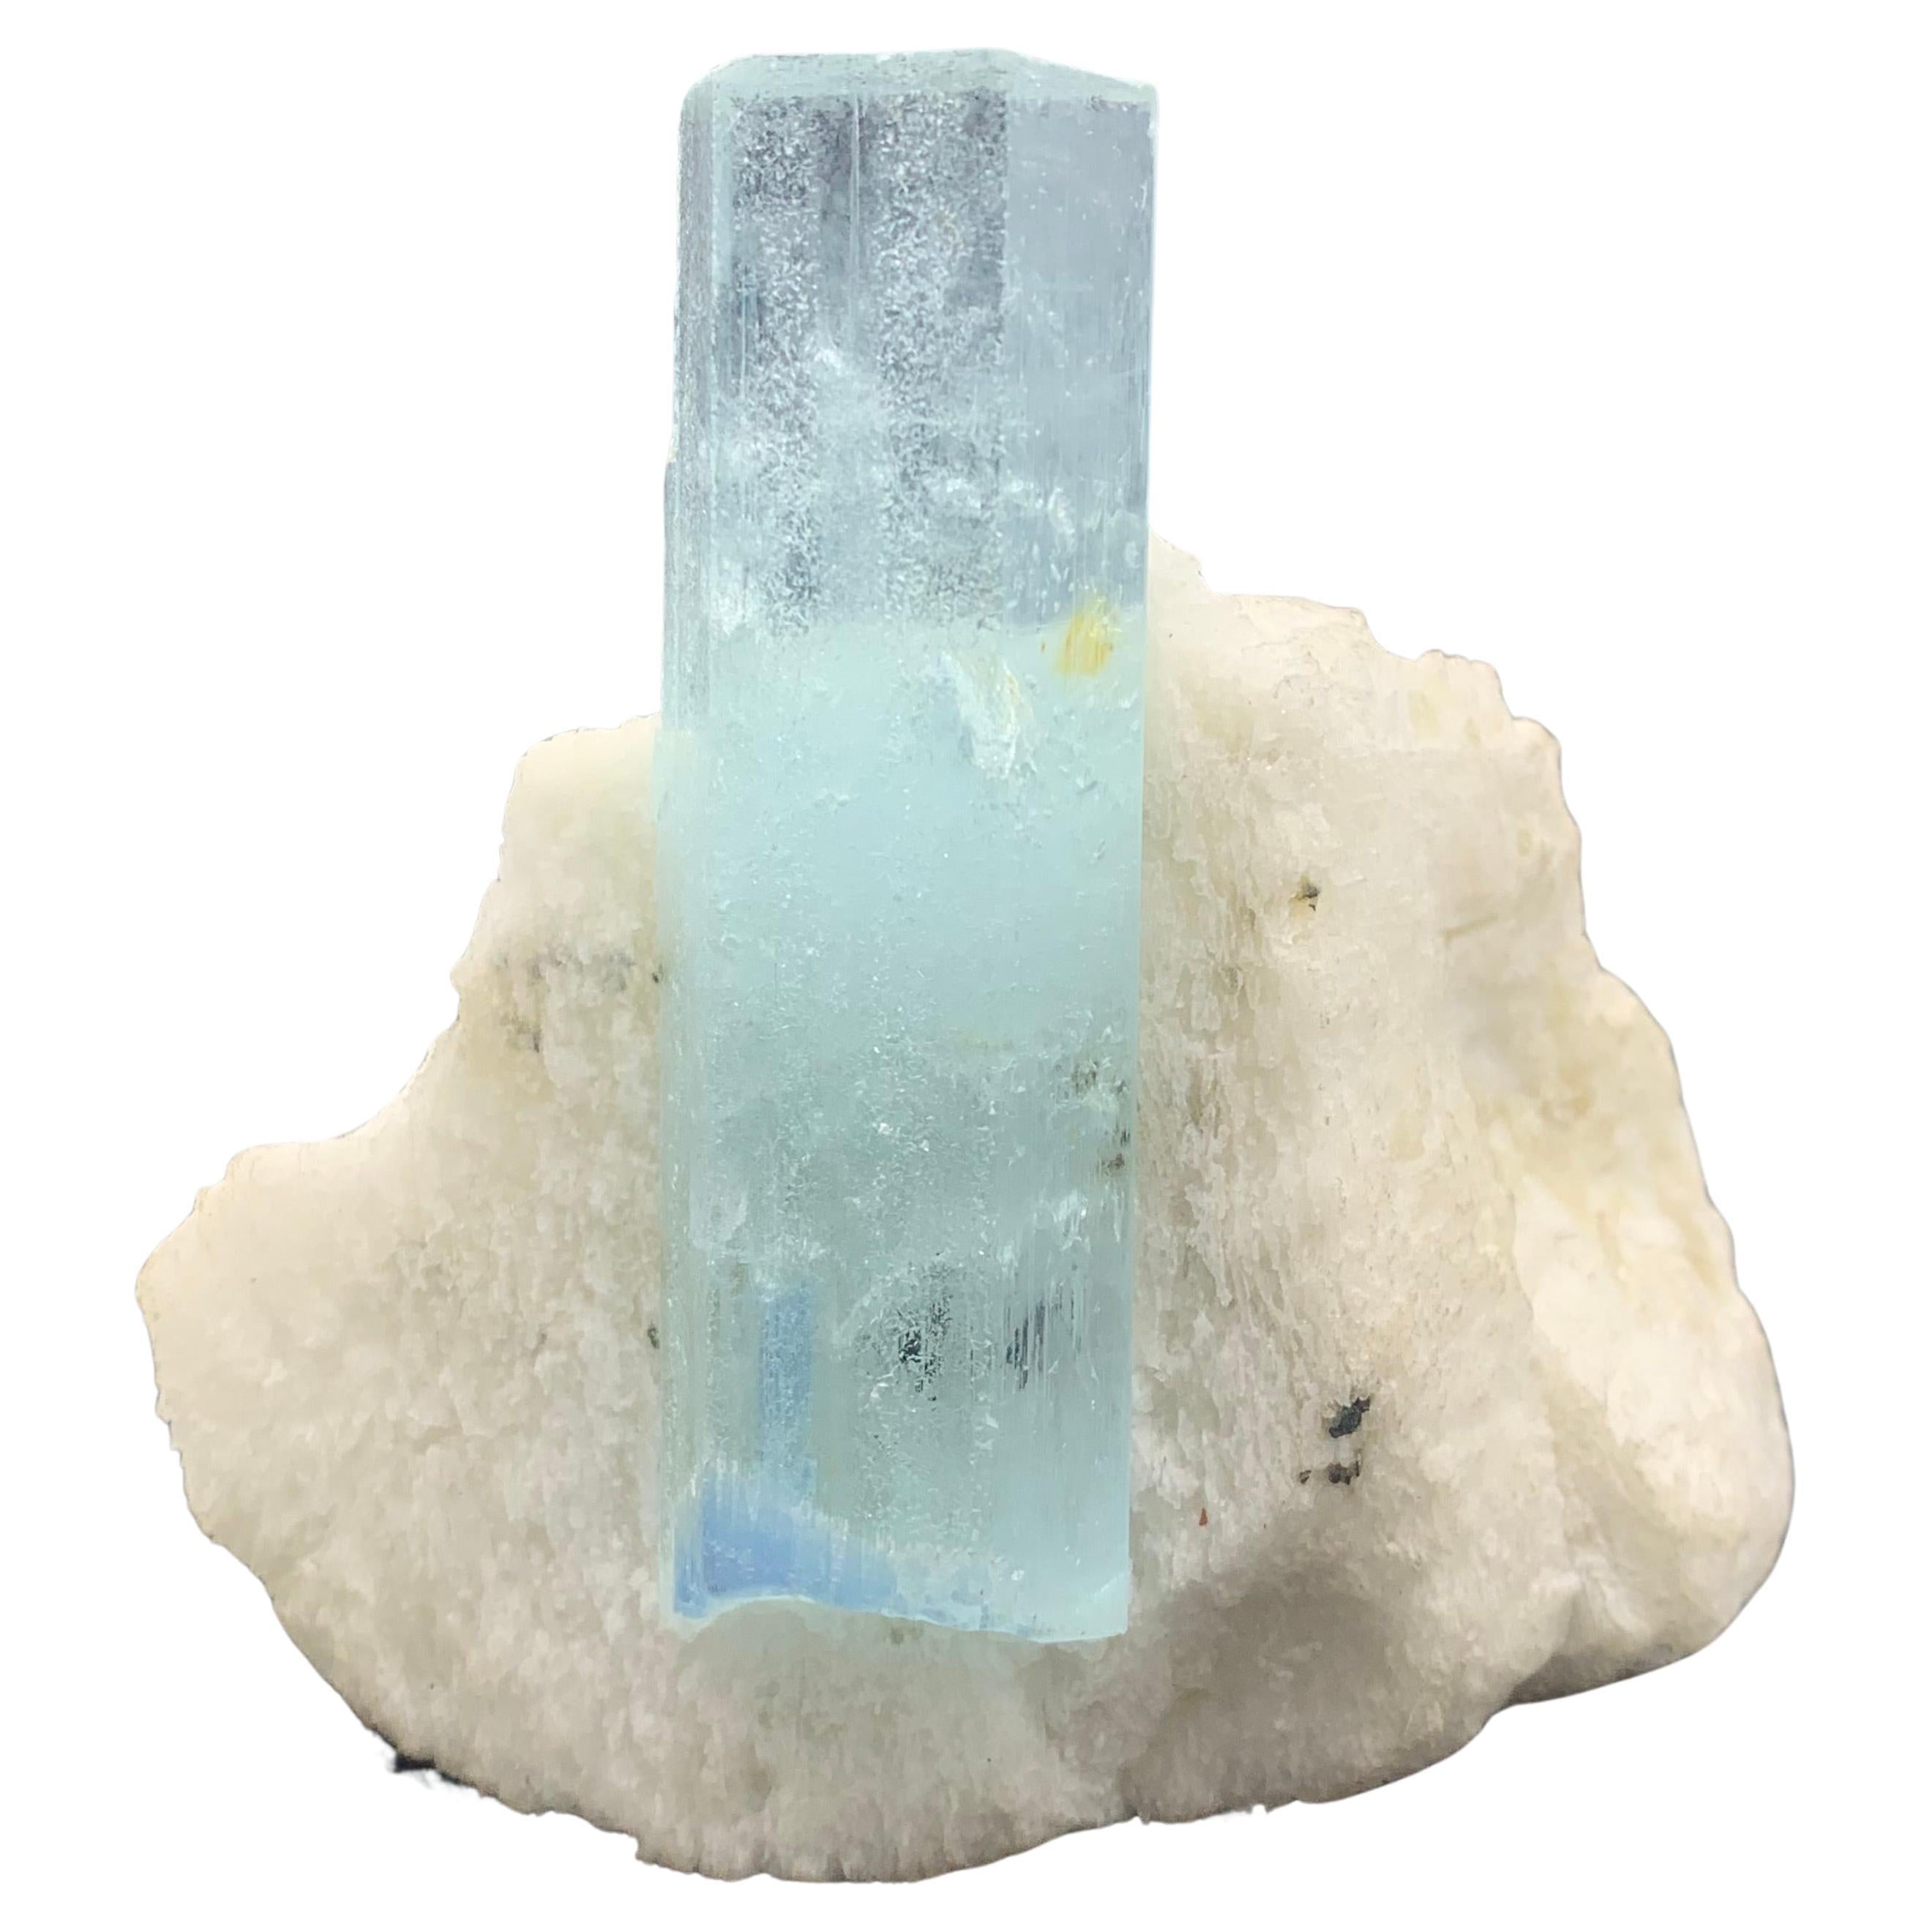 236.5 Gram Pretty Aquamarine Crystal On Feldspar From Shigar Valley, Pakistan 